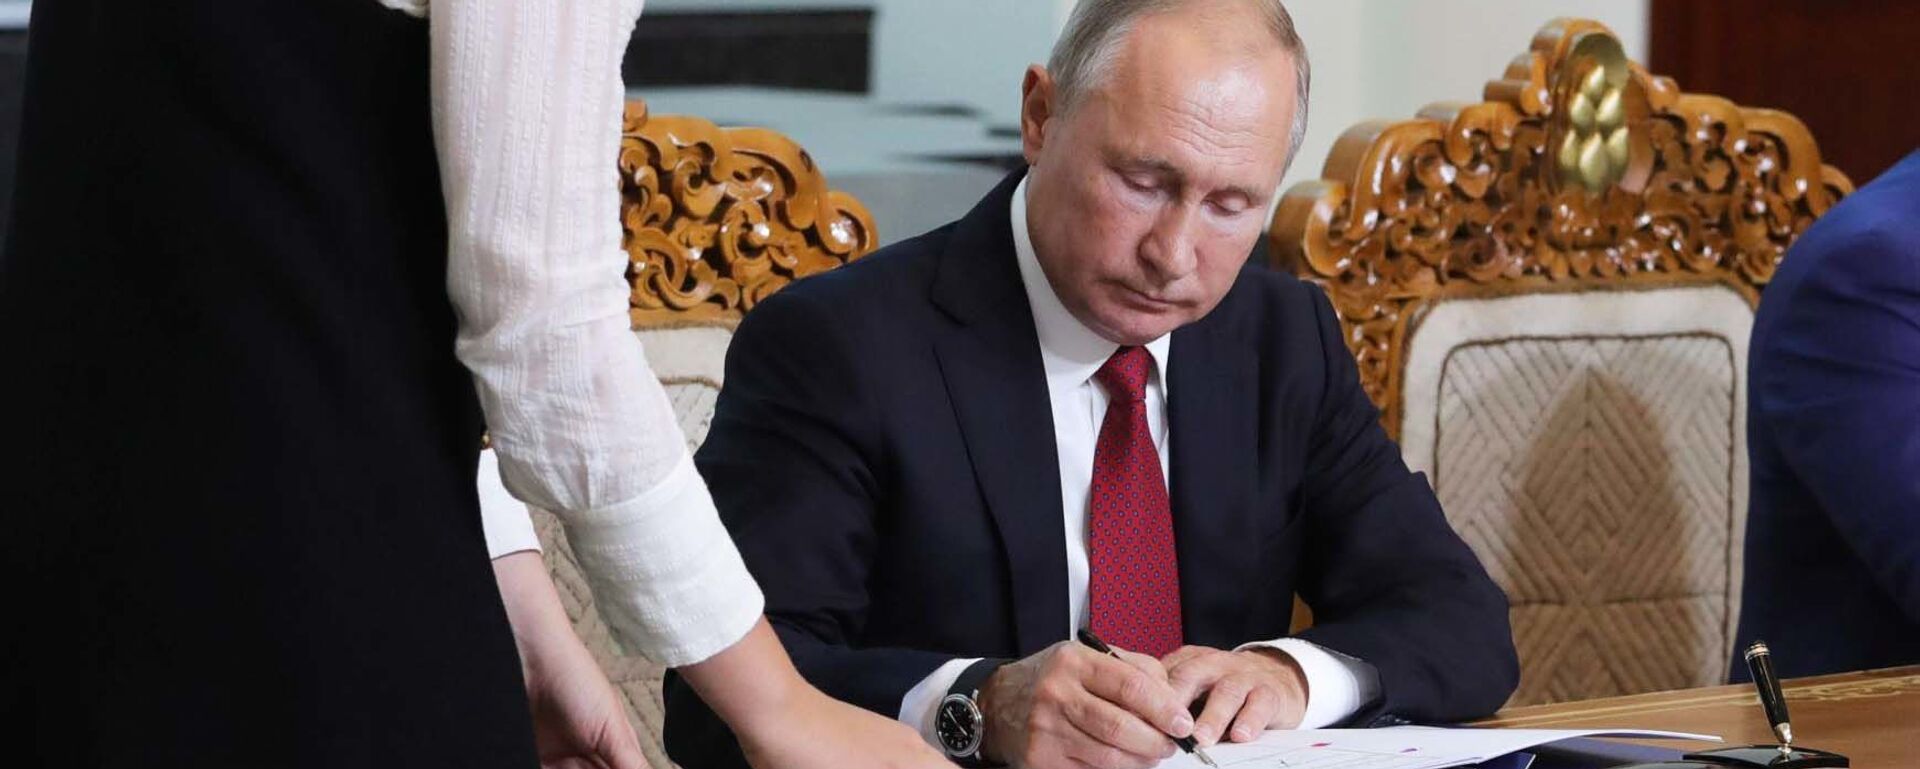 Президент РФ Владимир Путин подписывает документ, архивное фото - Sputnik Таджикистан, 1920, 01.07.2021